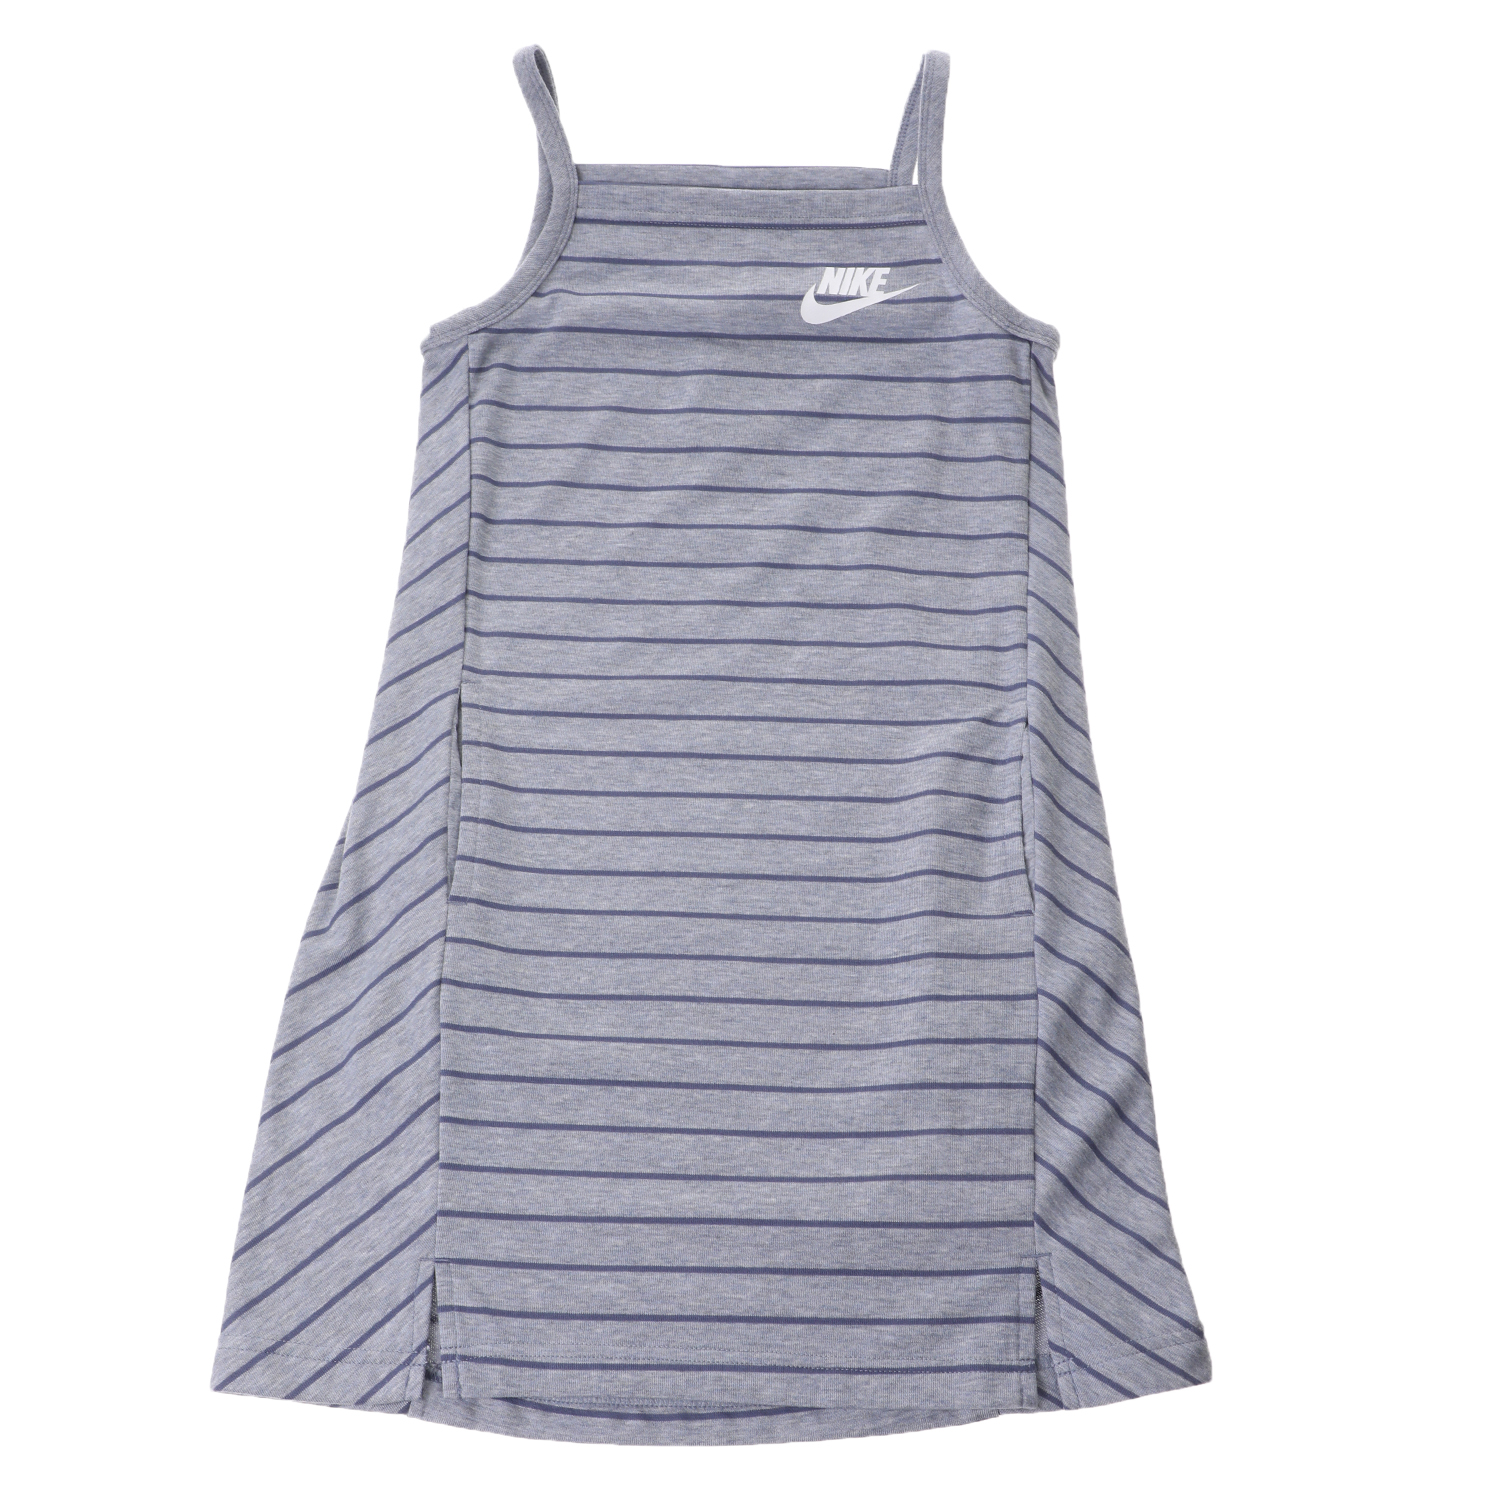 Παιδικά/Girls/Ρούχα/Φορέματα Κοντομάνικα-Αμάνικα NIKE - Παιδικό φόρεμα Nike Sportswear Fleece γκρι μπλε